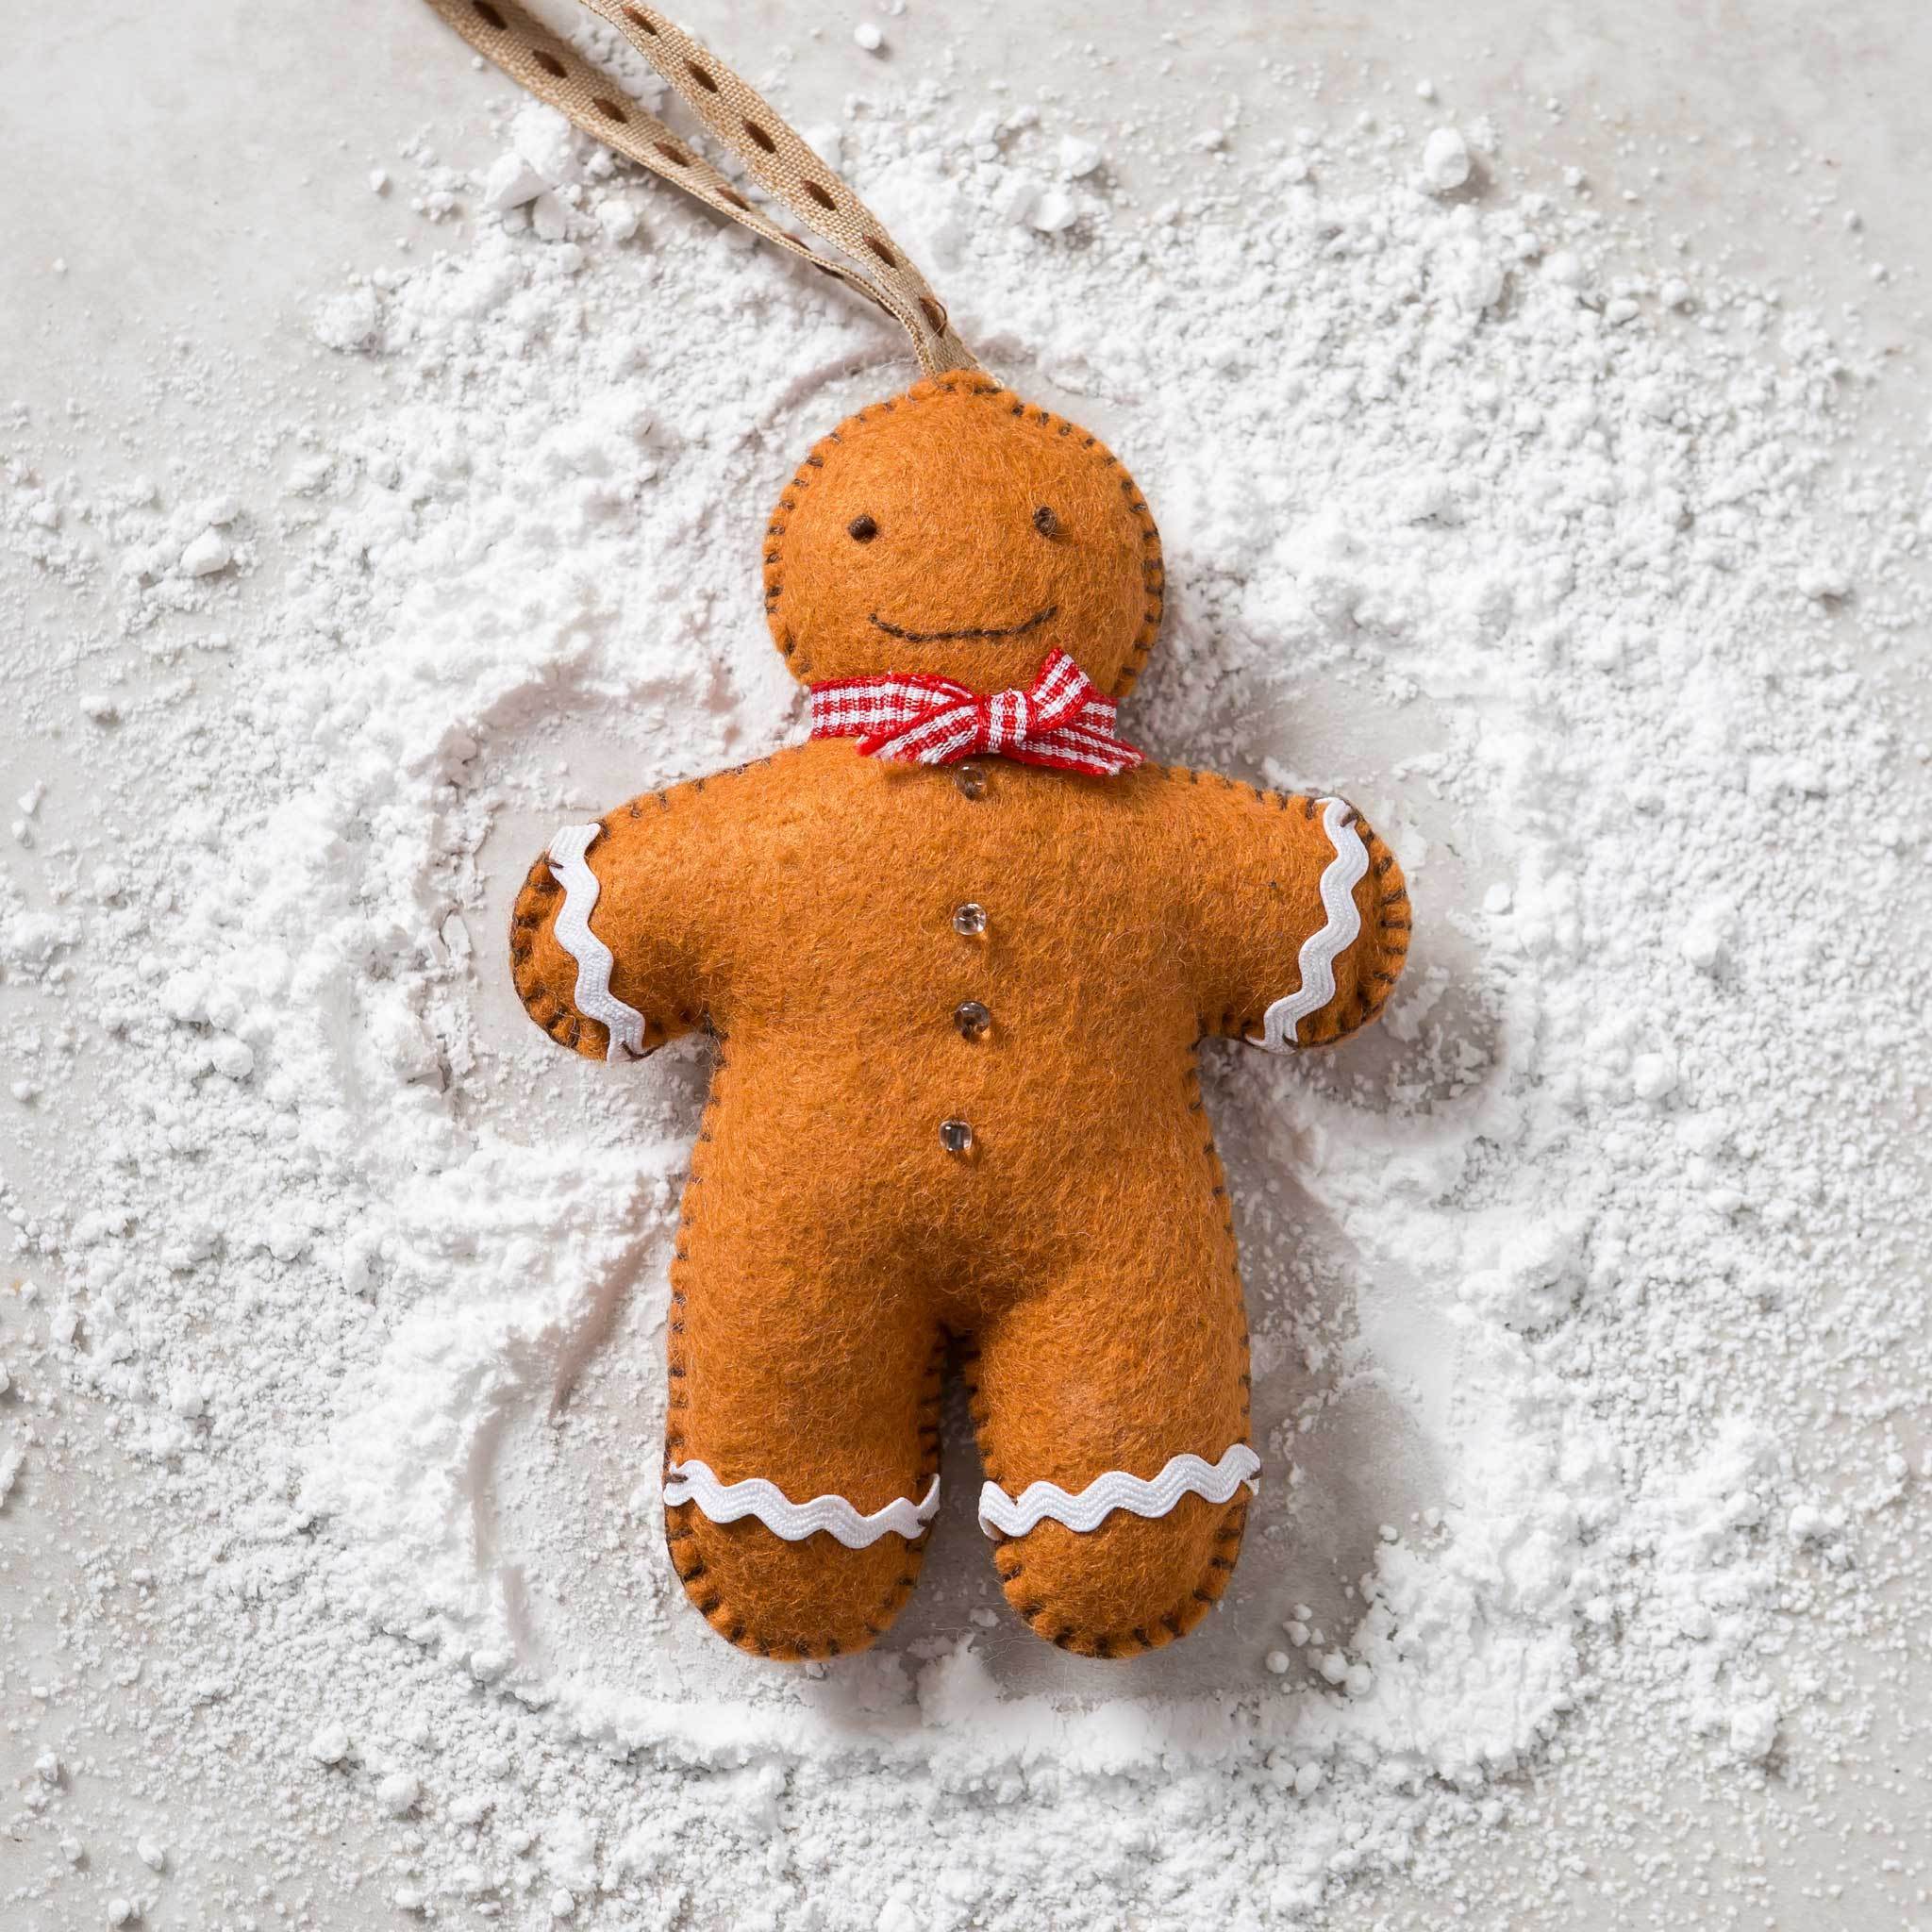 Gingerbread Man Felt Craft Kit – A Toy Garden